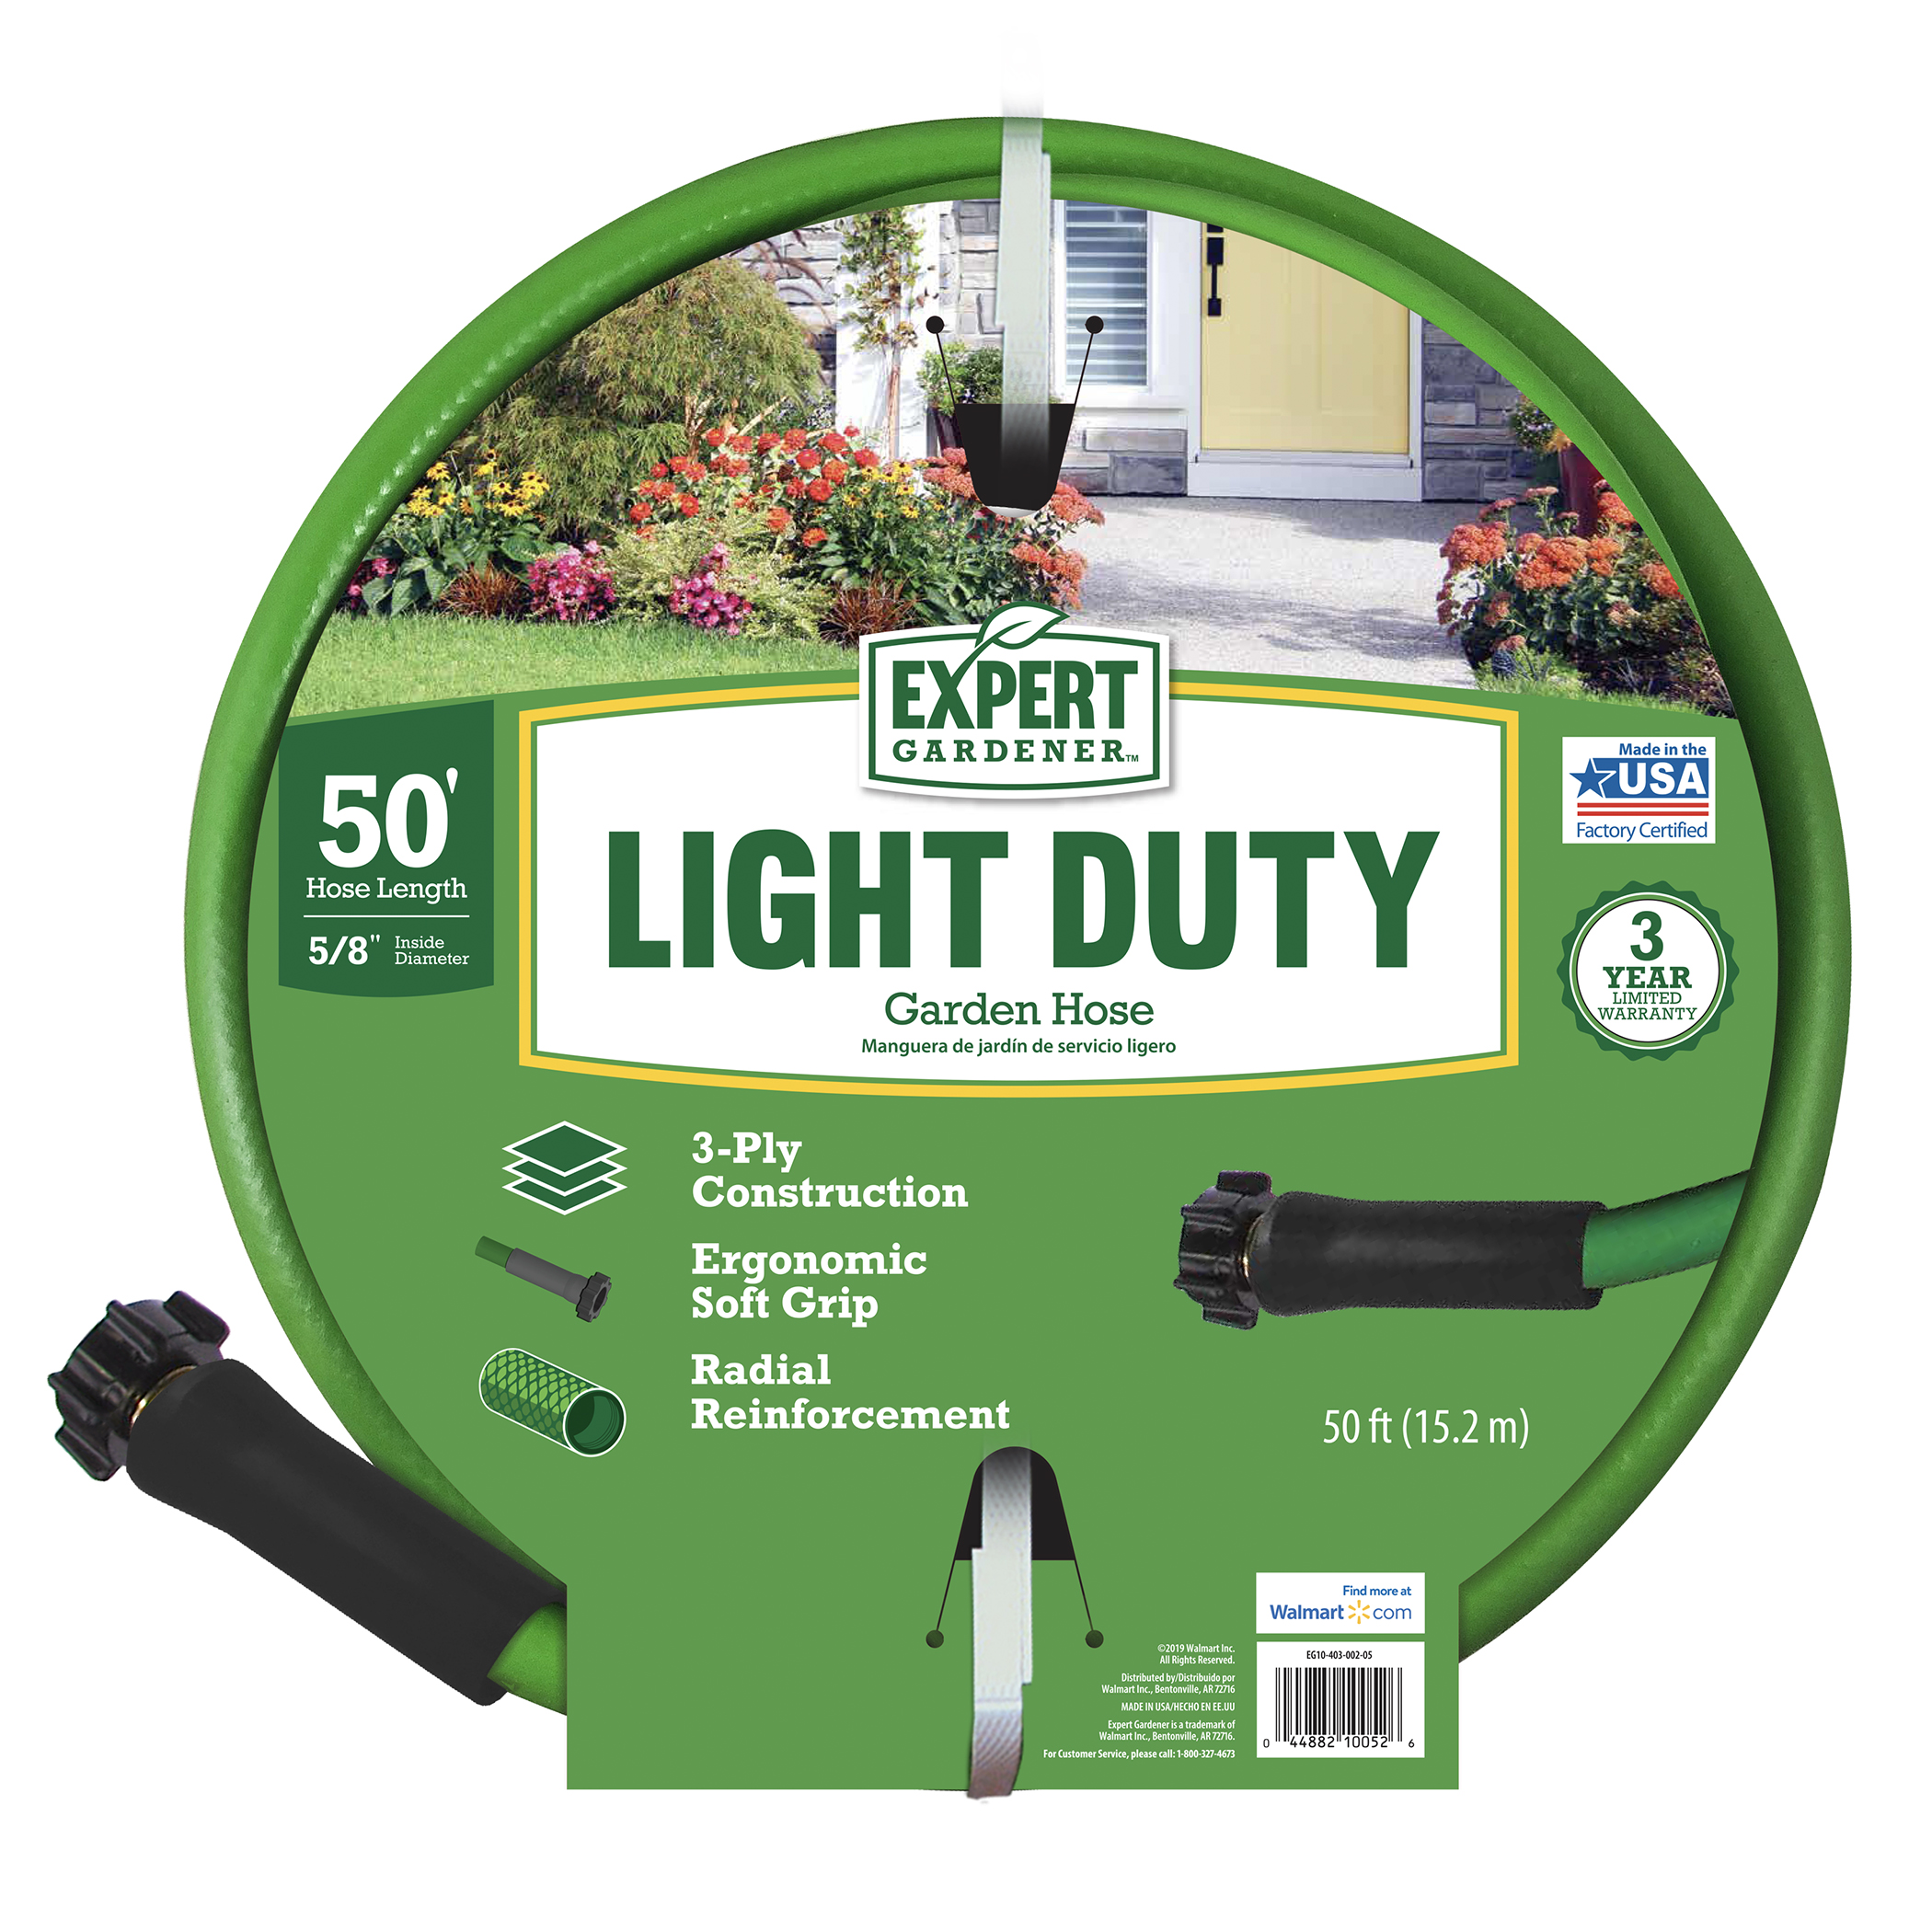 Expert Gardener Light Duty 5/8" x 50' Vinyl Garden Hose - image 4 of 13